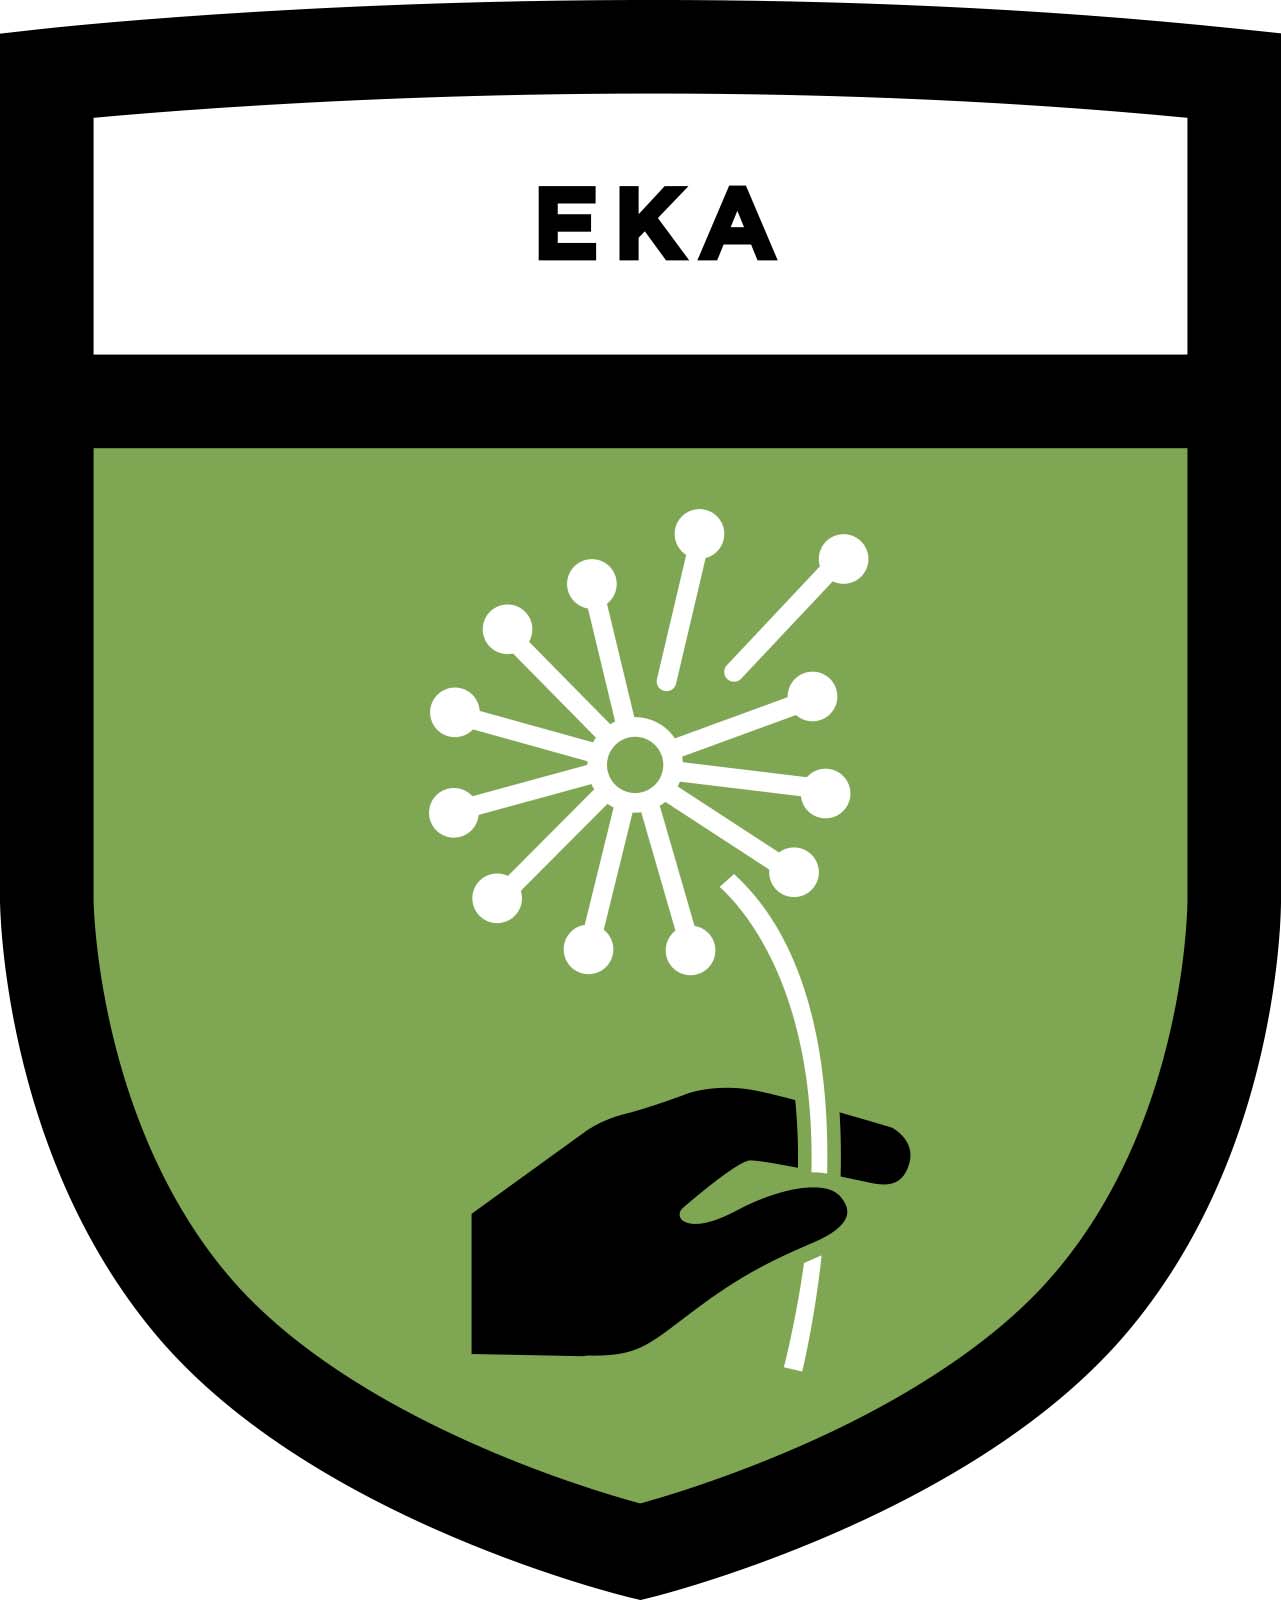 Eka Shield